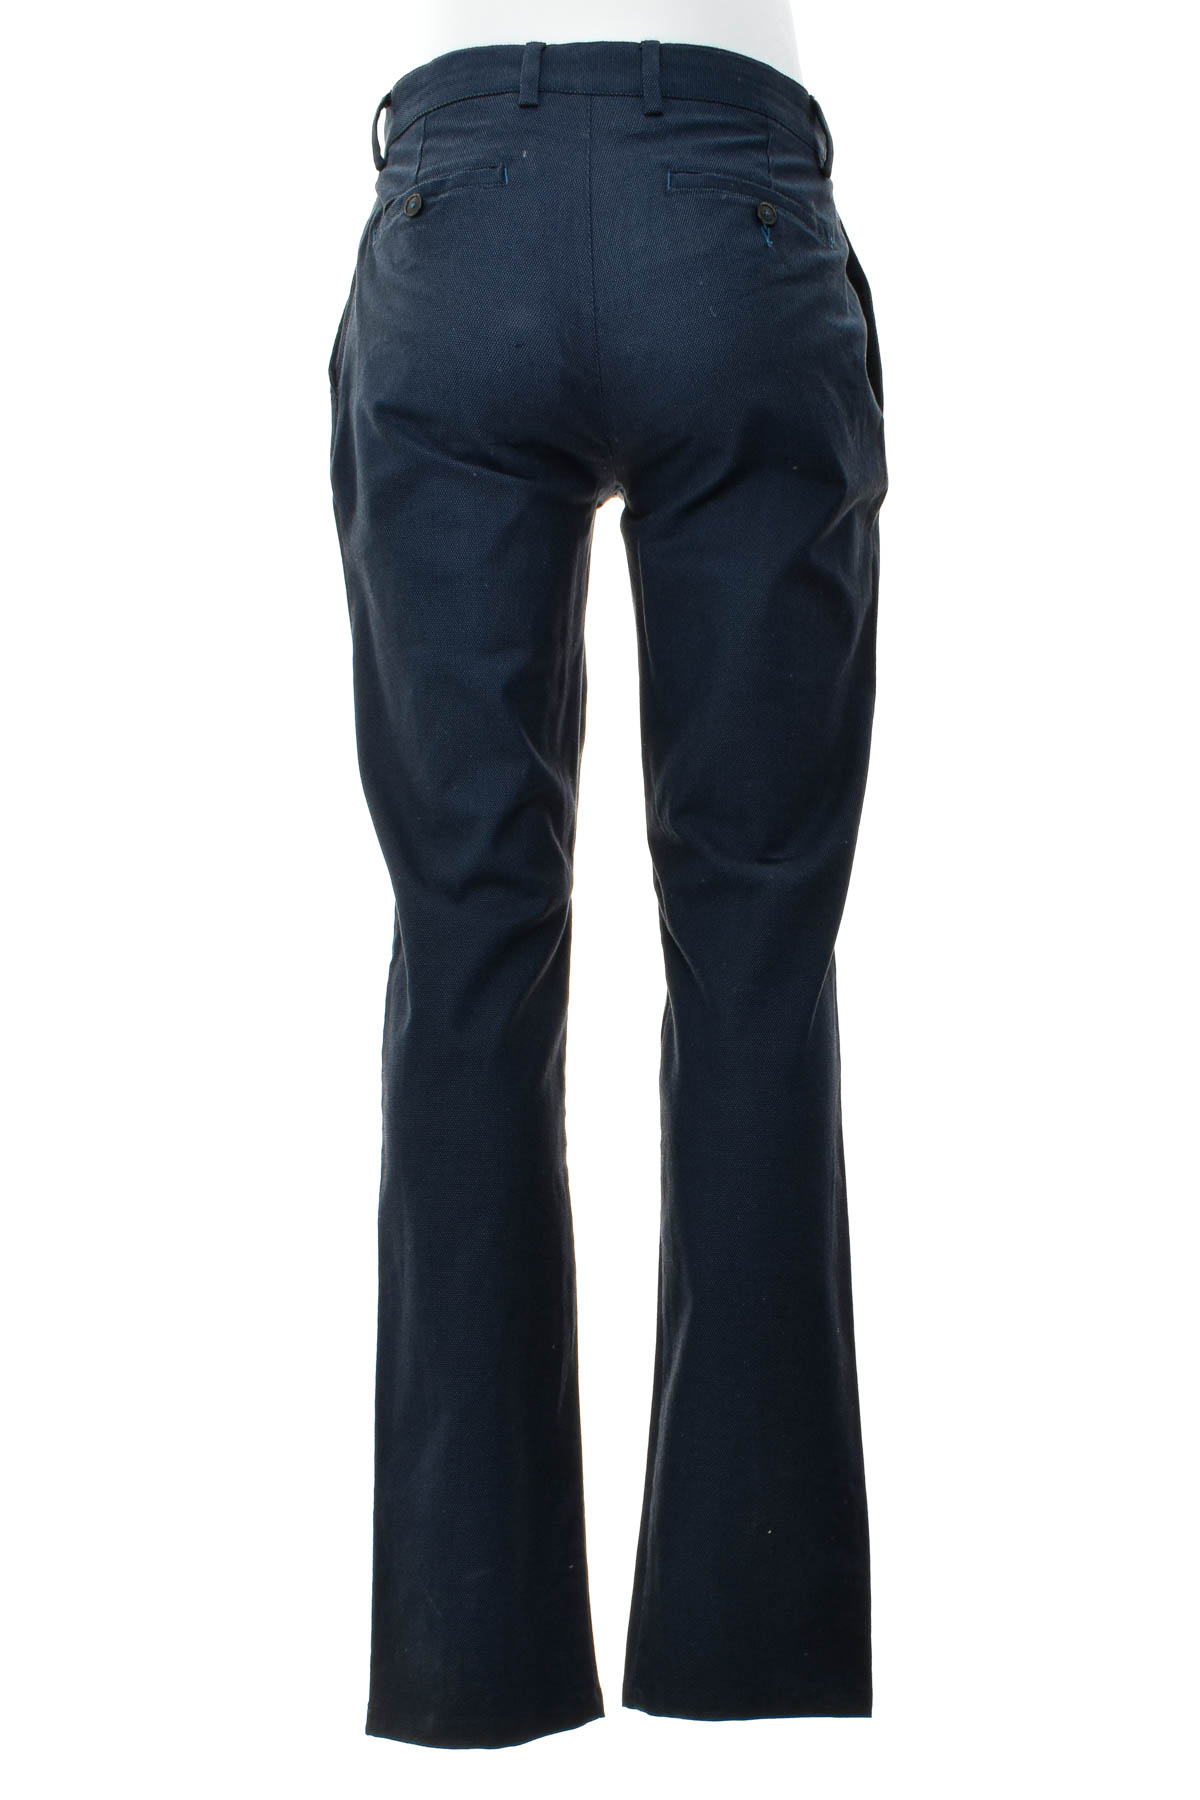 Pantalon pentru bărbați - Brice - 1